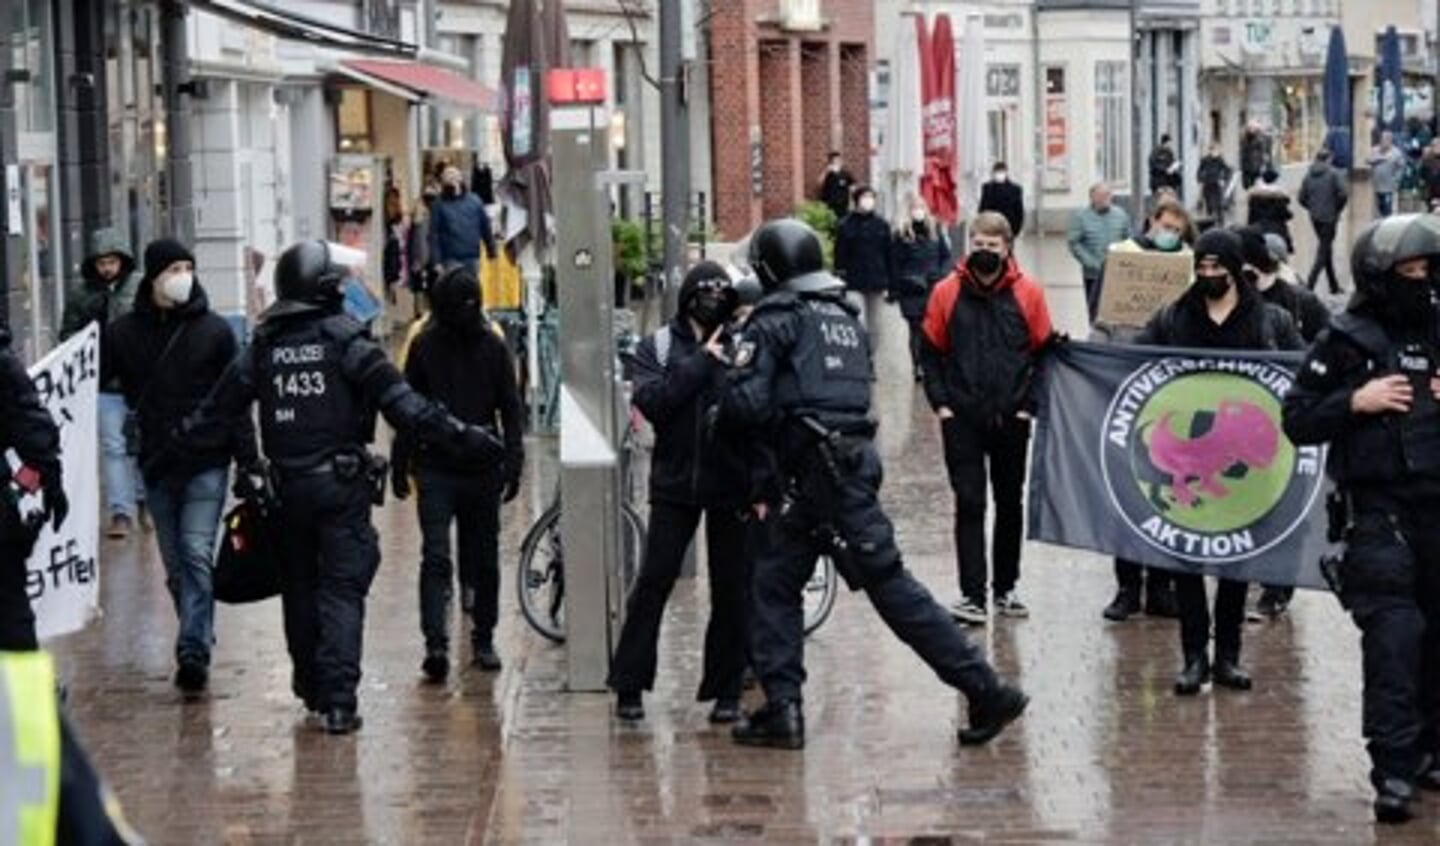 Omkring 200 demonstranter gik gennem Flensborgs gader. Foto: